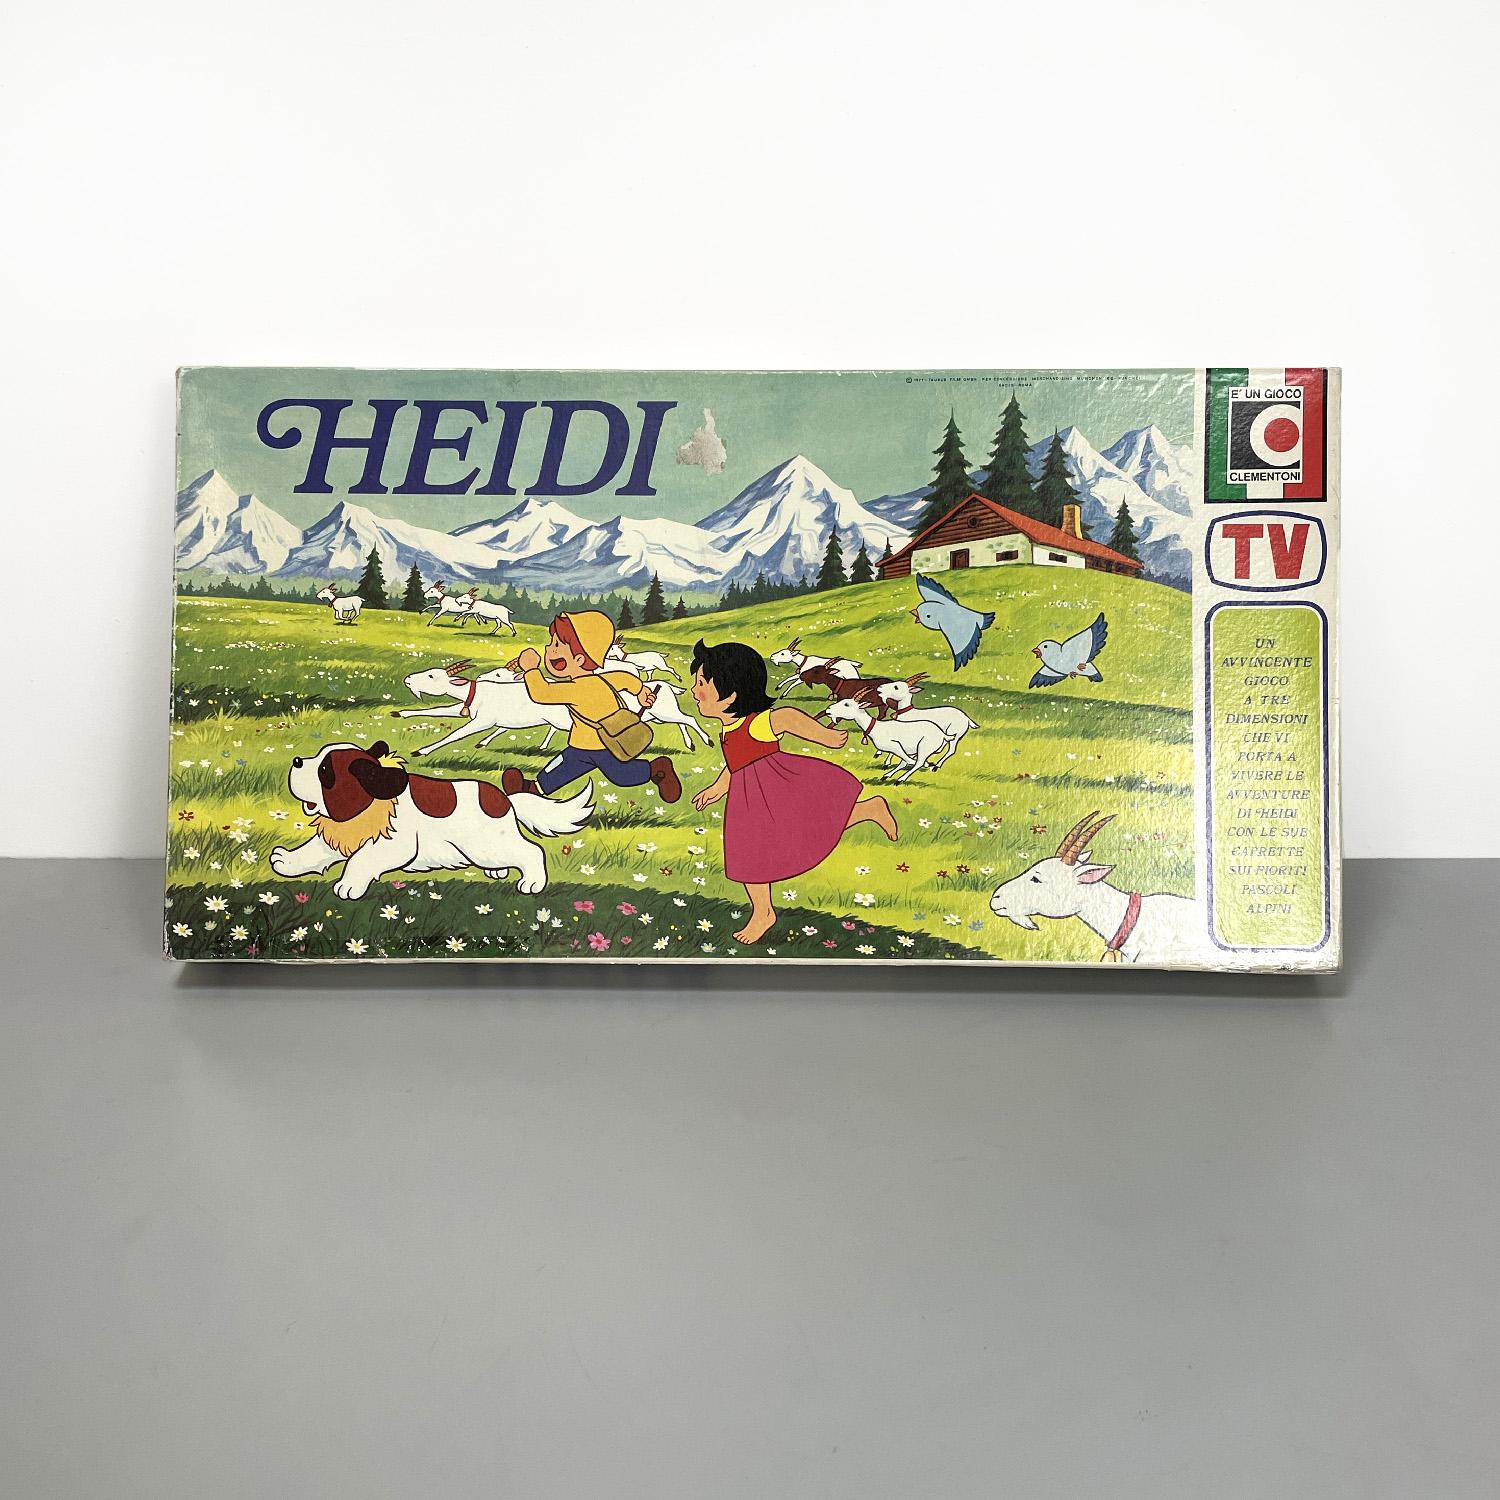 Jeu de société italien moderne Heidi par Clementoni, années 1980
Jeu de plateau Heidi avec boîte rectangulaire, contenant les pièces nécessaires au jeu. En haut, une image représente le personnage du célèbre dessin animé avec quelques